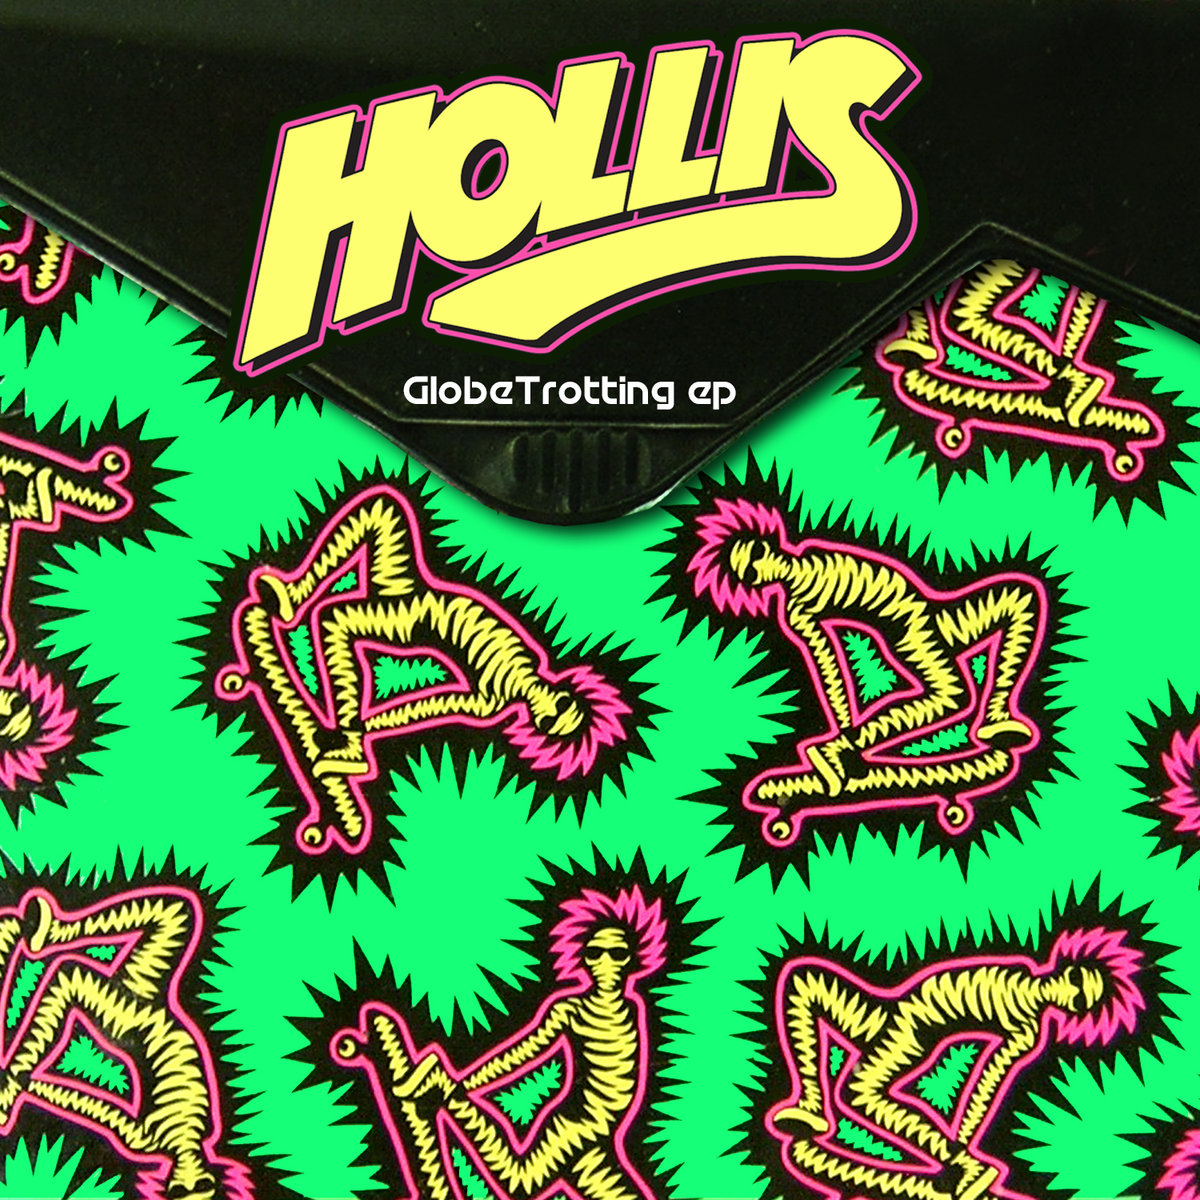 Hollis - Globetrotting @ 'Globetrotting' album (electronic, dubstep)